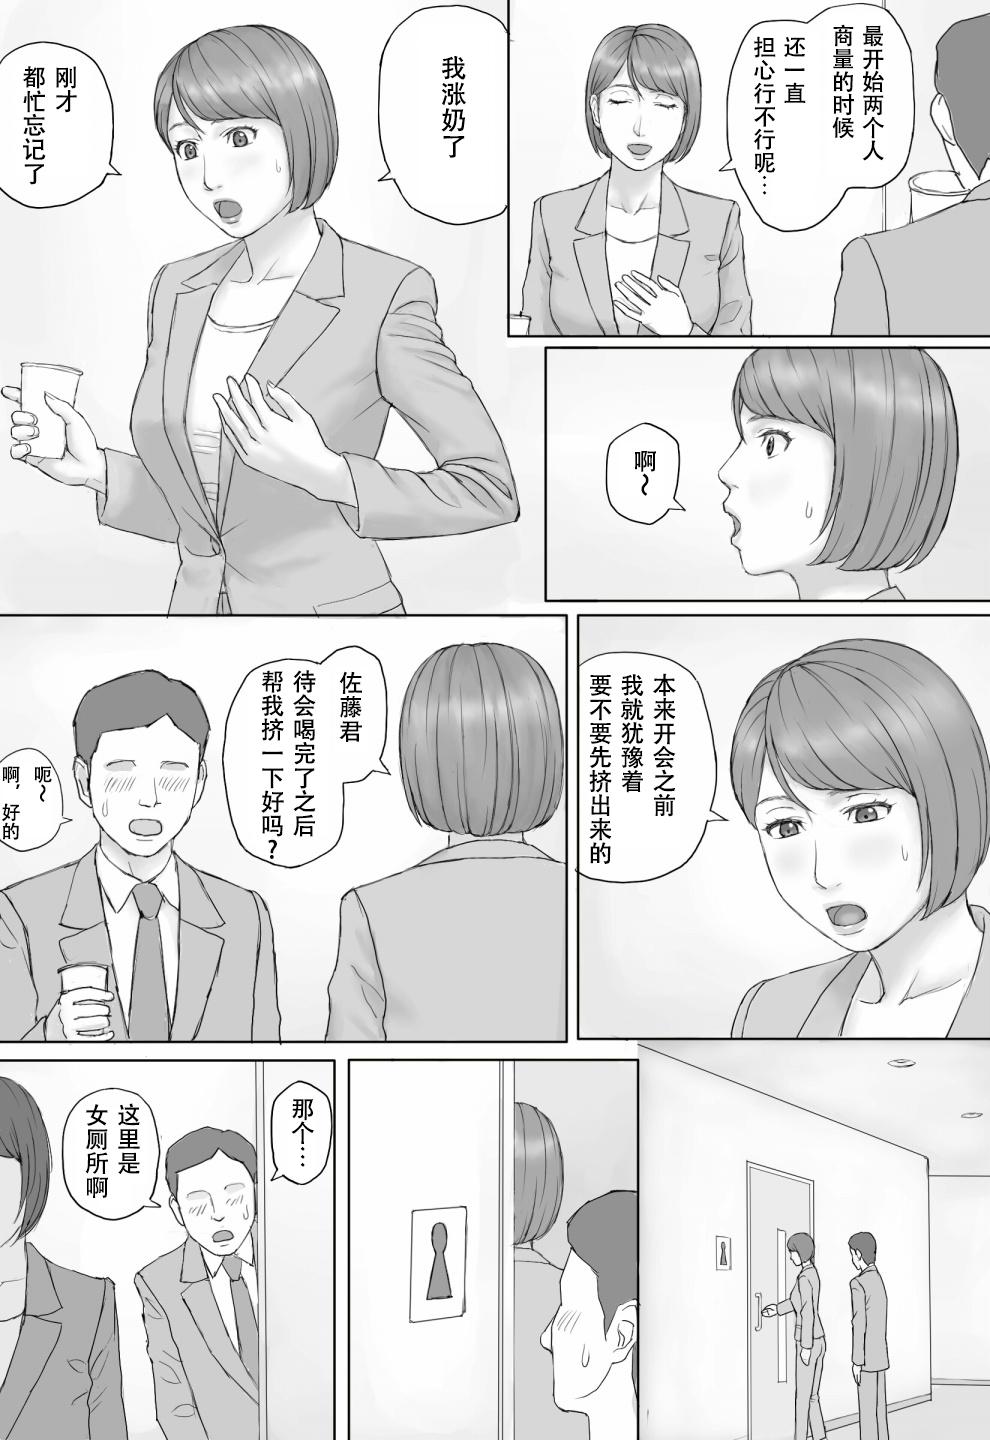 Police Moshimo no sekai - Original Facesitting - Page 9